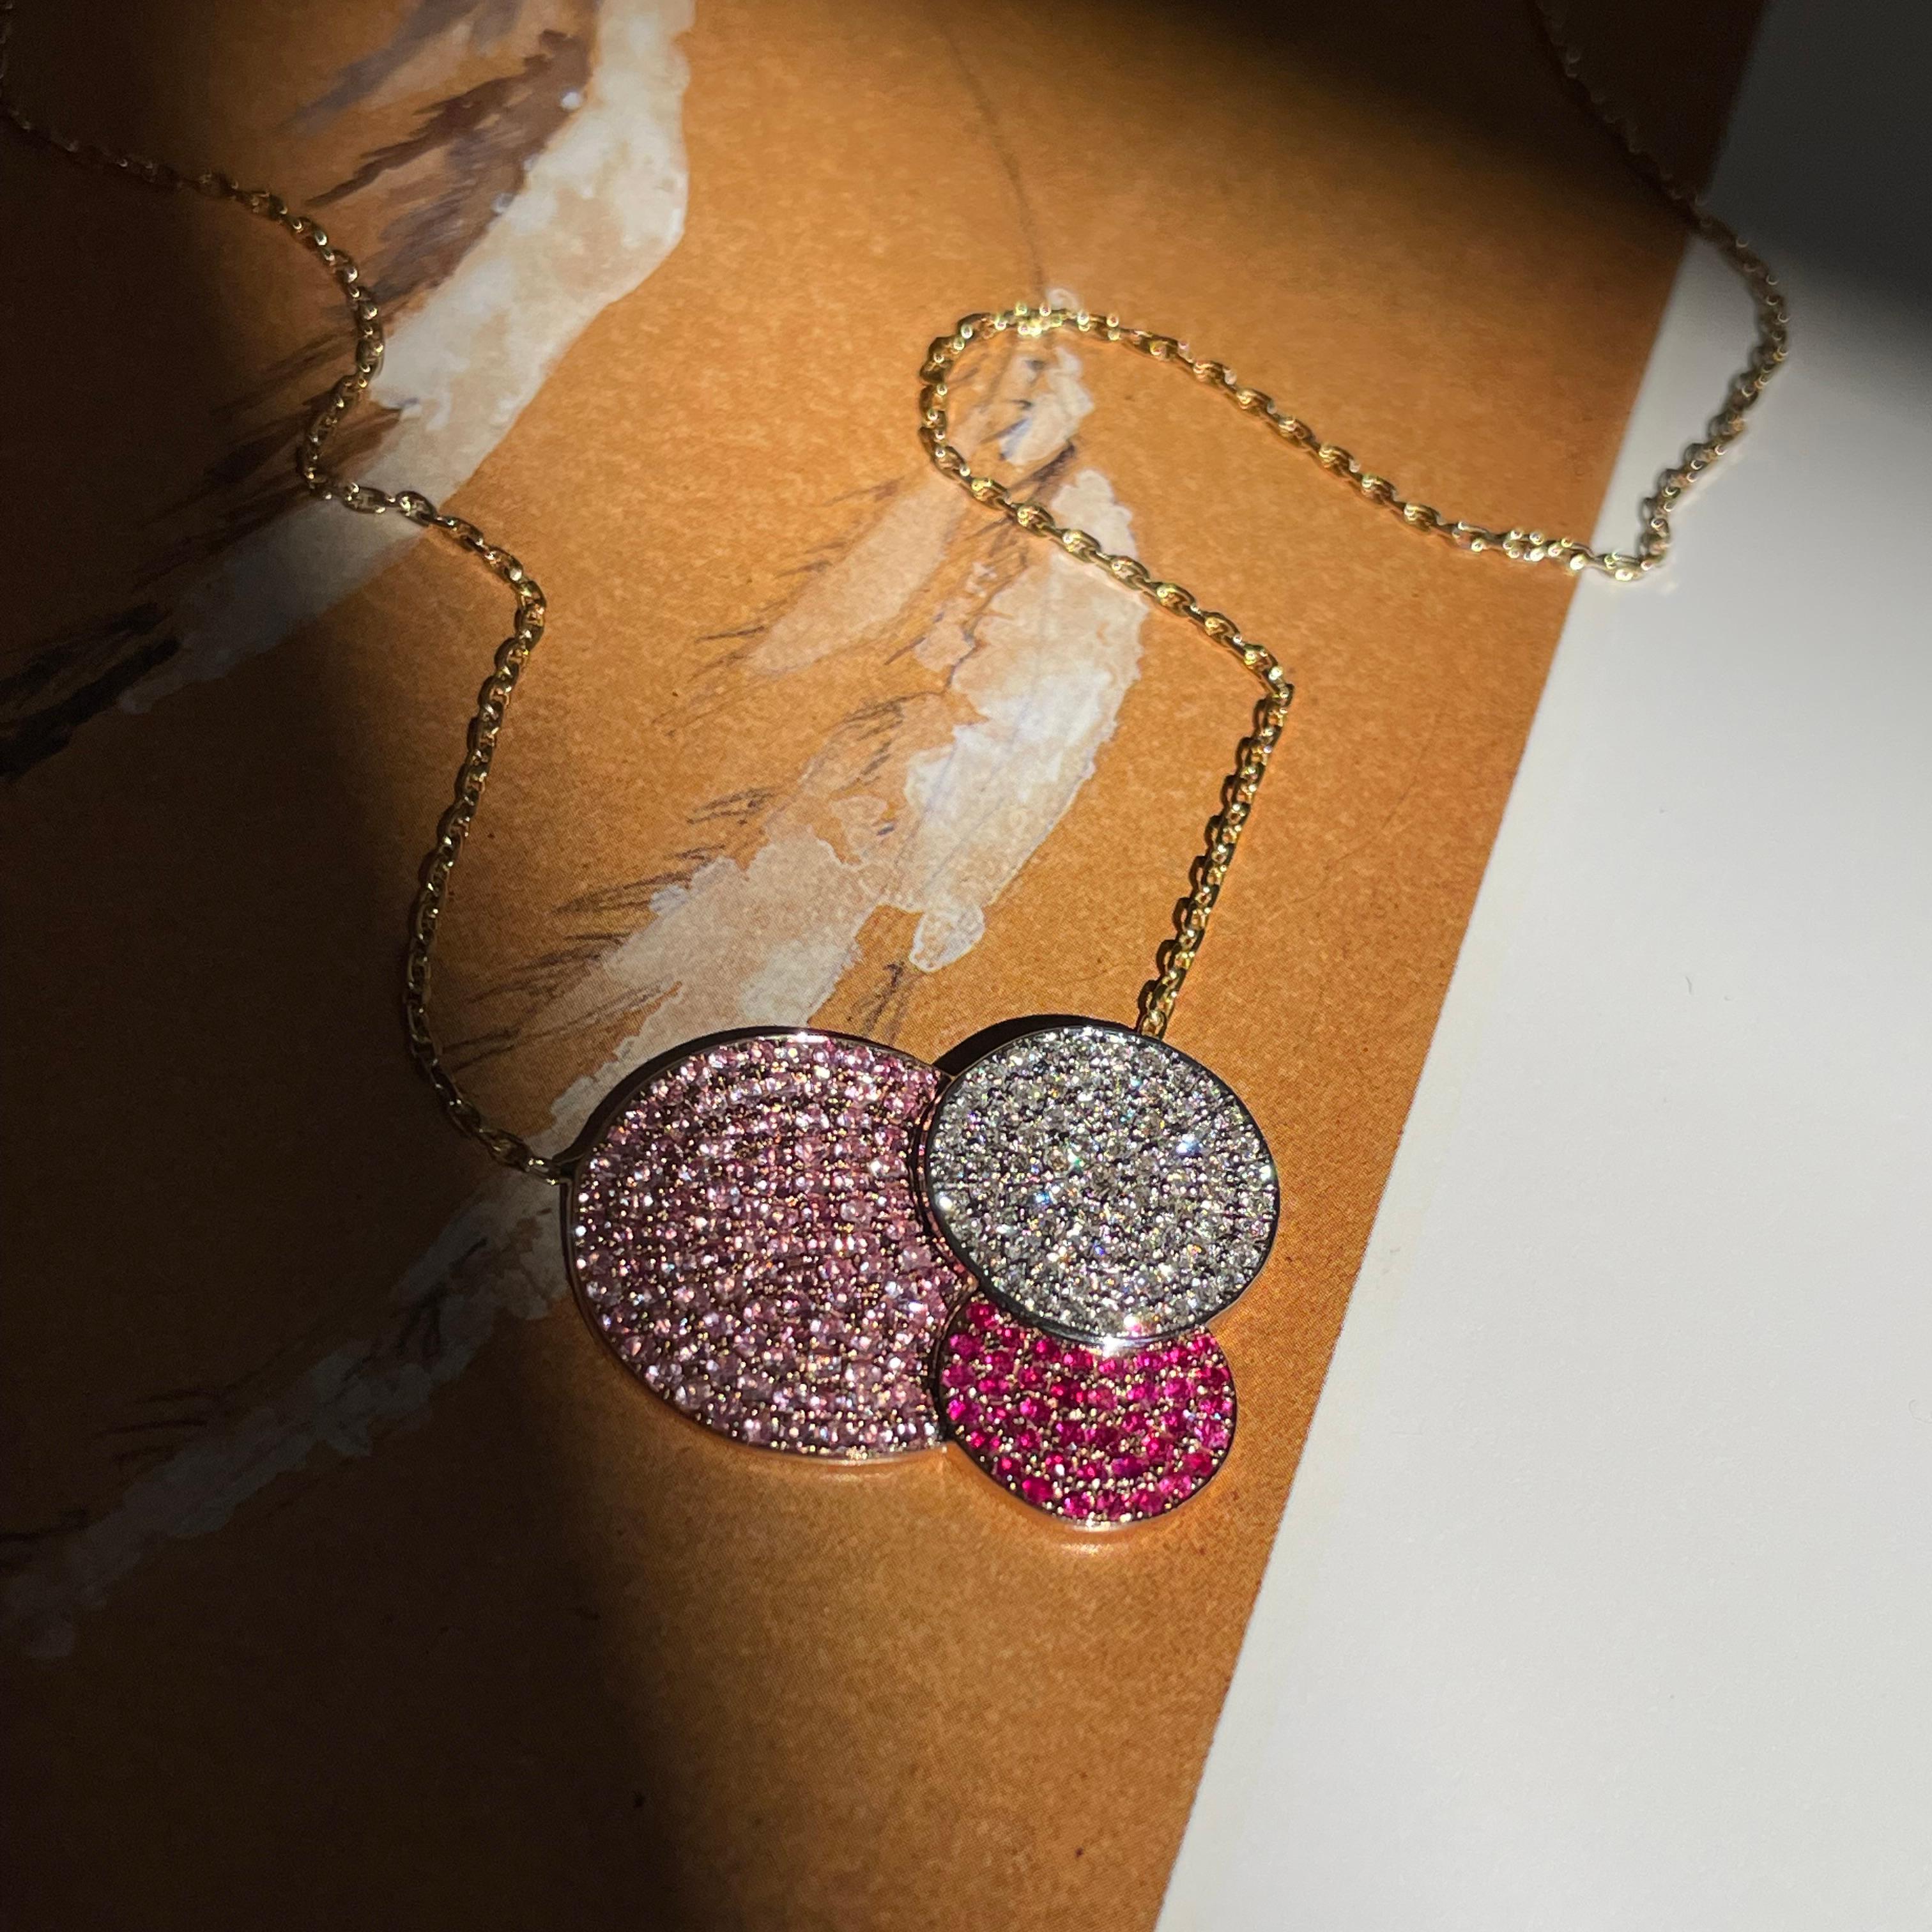 Élégant collier en or rose 18 carats de la collection '1919' de Ralph Masri, inspirée du Bauhaus, serti de diamants (0,66 ct), de rubis (0,41 ct) et de saphirs roses (1,04 ct). 